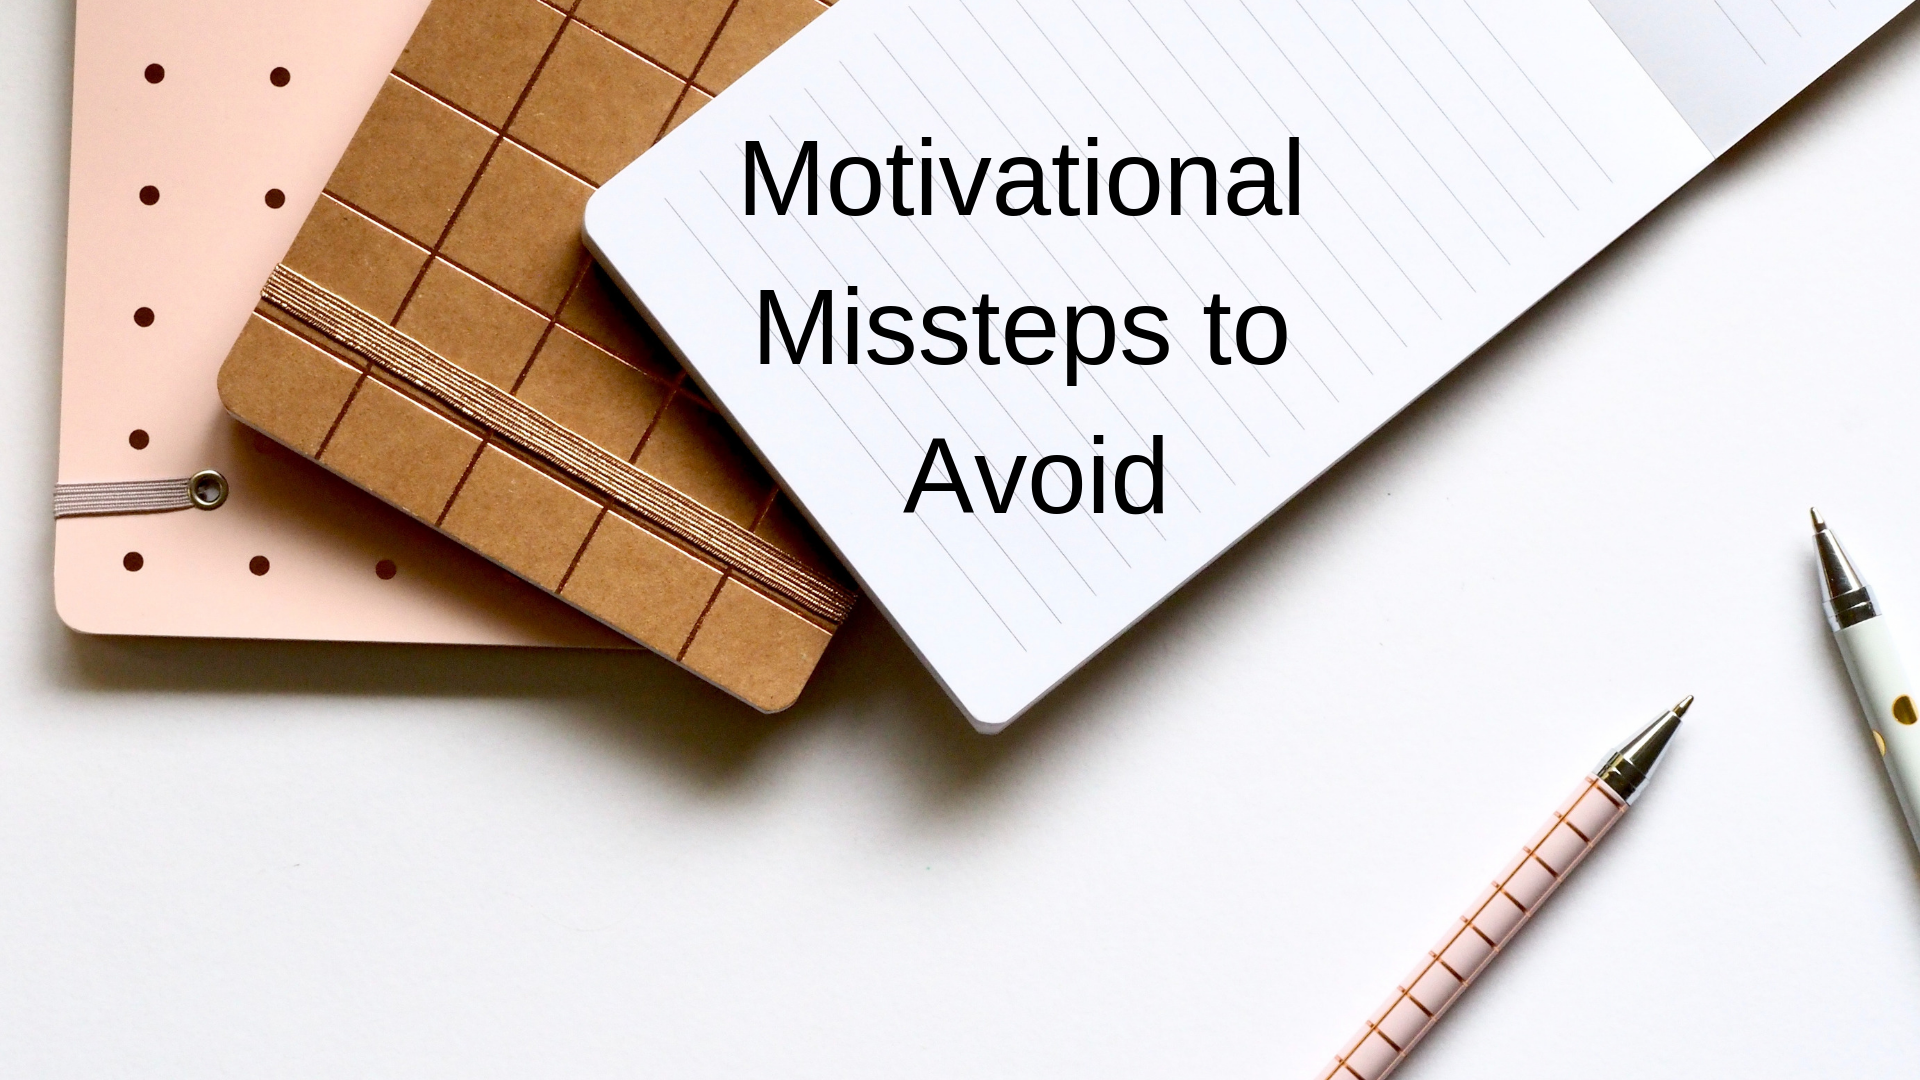 Motivational Missteps to Avoid